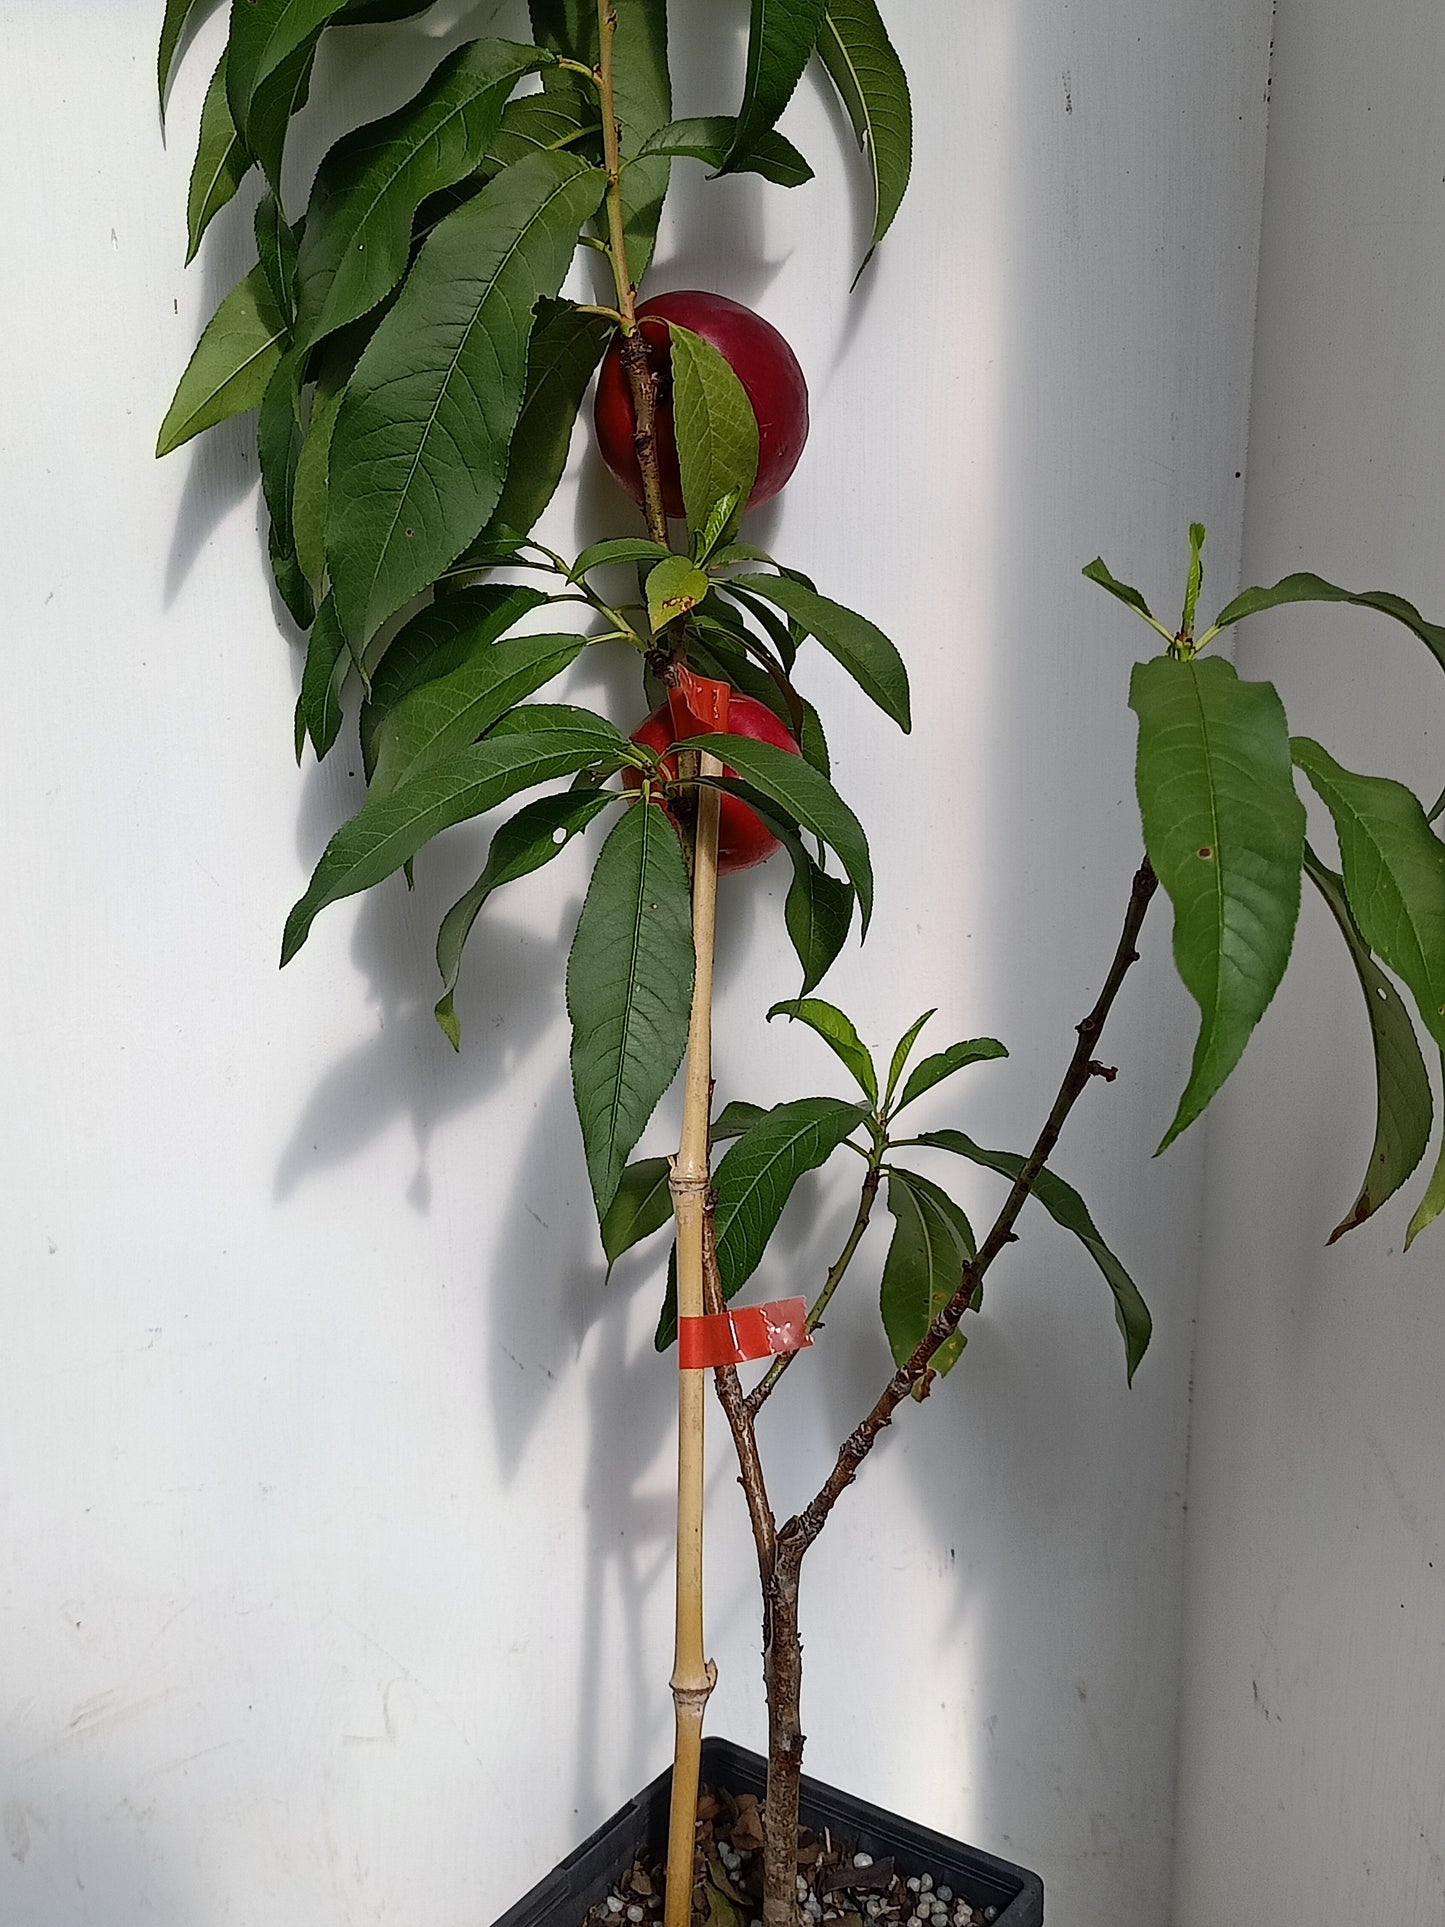 Low Chill Nectarine - Prunus persica